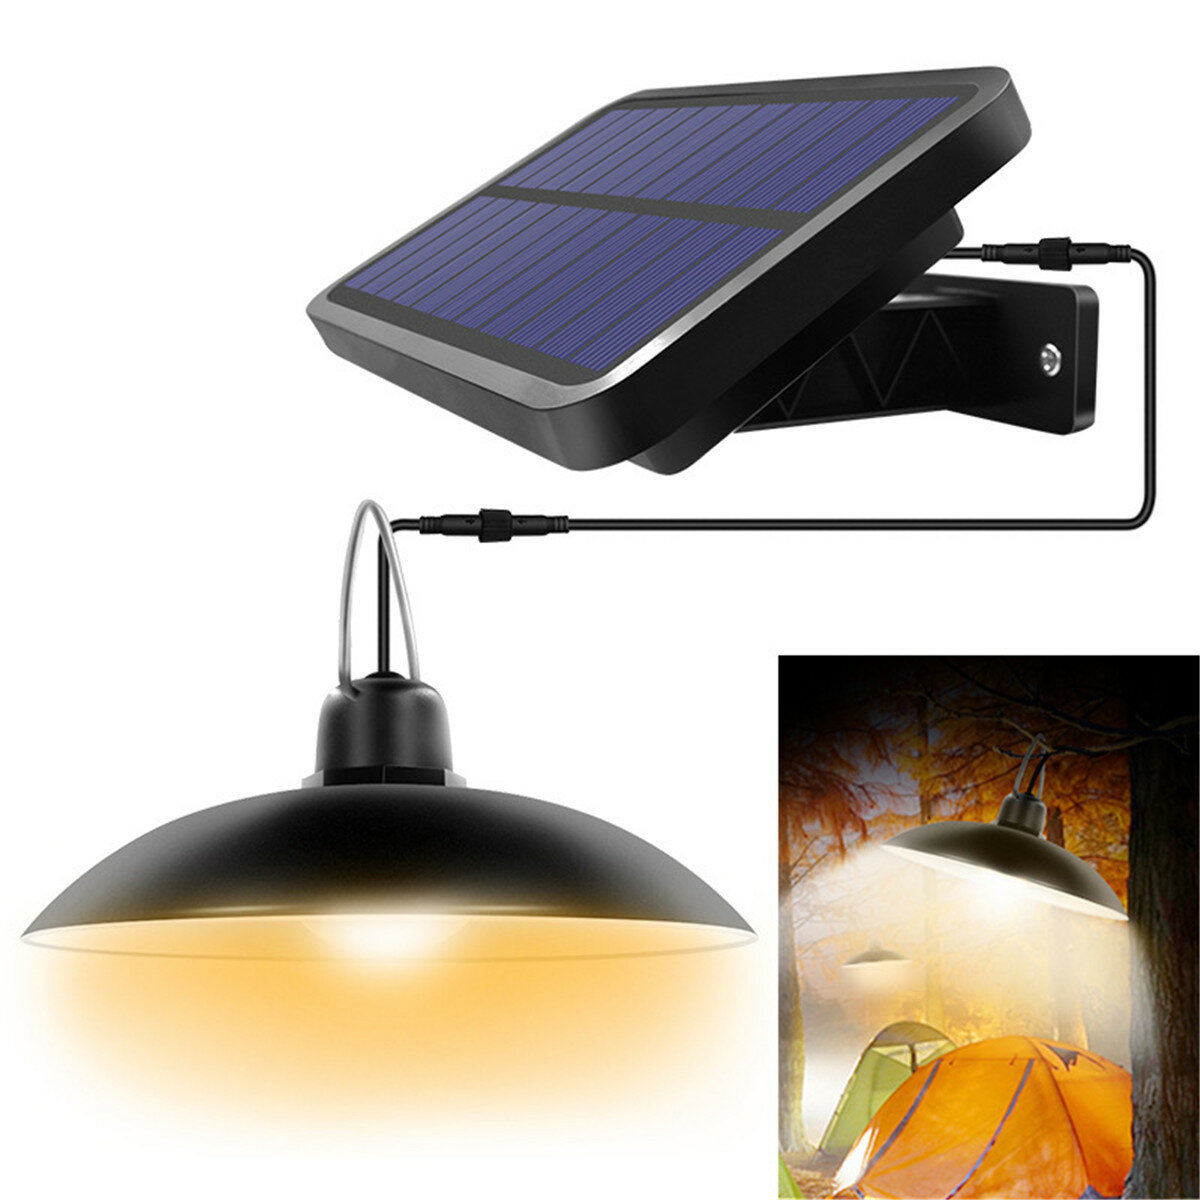 260 Lumen Solar Pendelleuchte Outdoor Indoor Solar Lampe Mit Linie Warmweiß / Weiß Beleuchtung Für Camping Garden Yard